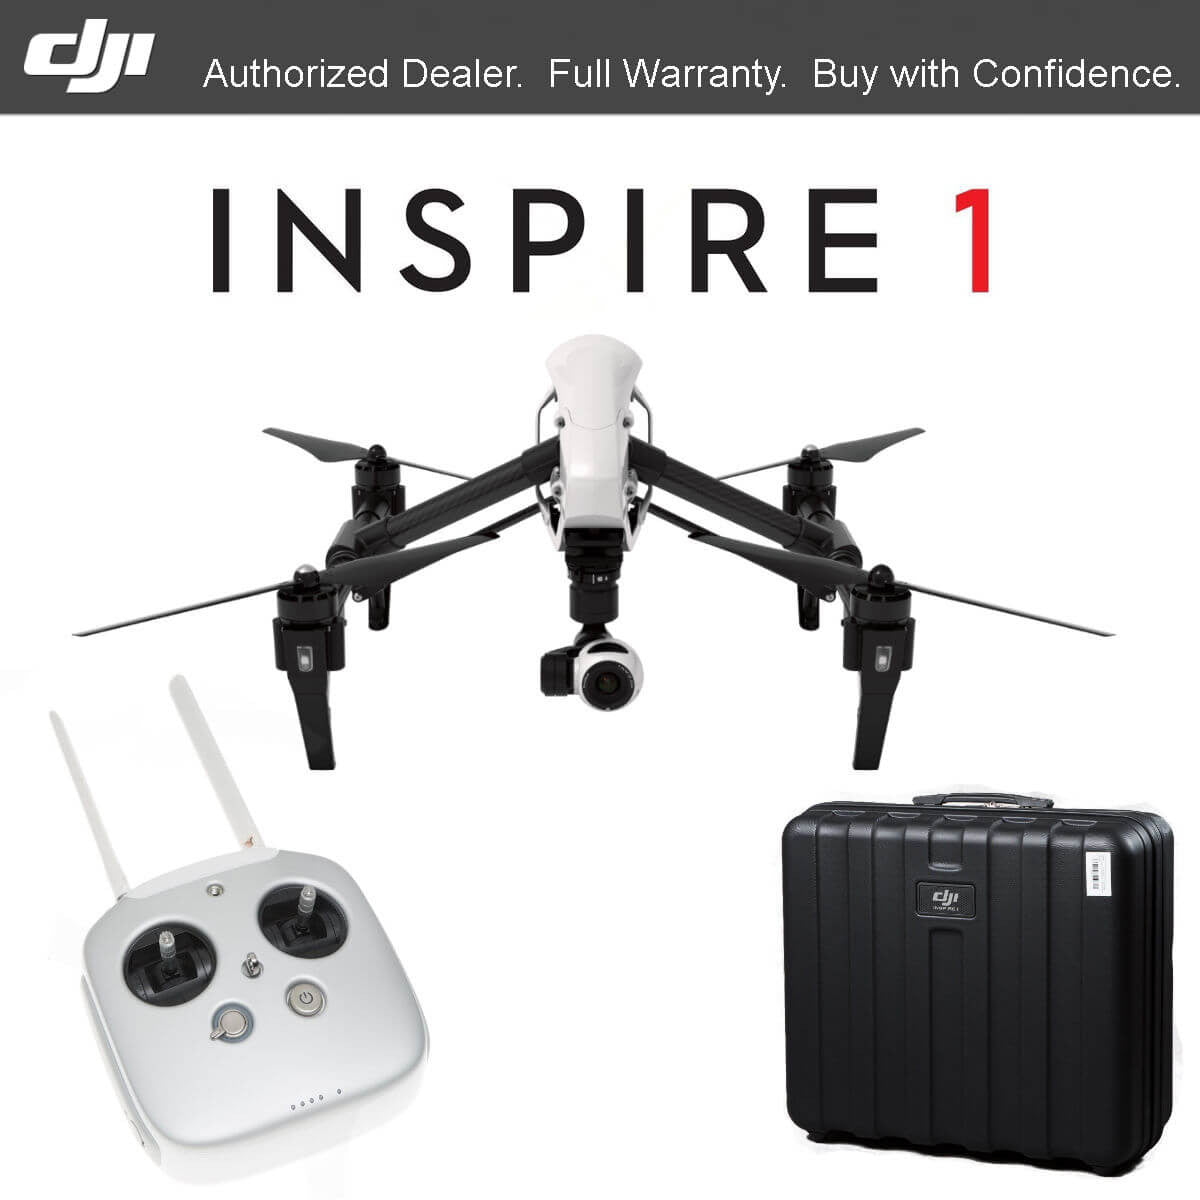 dji inspire 1 drone price